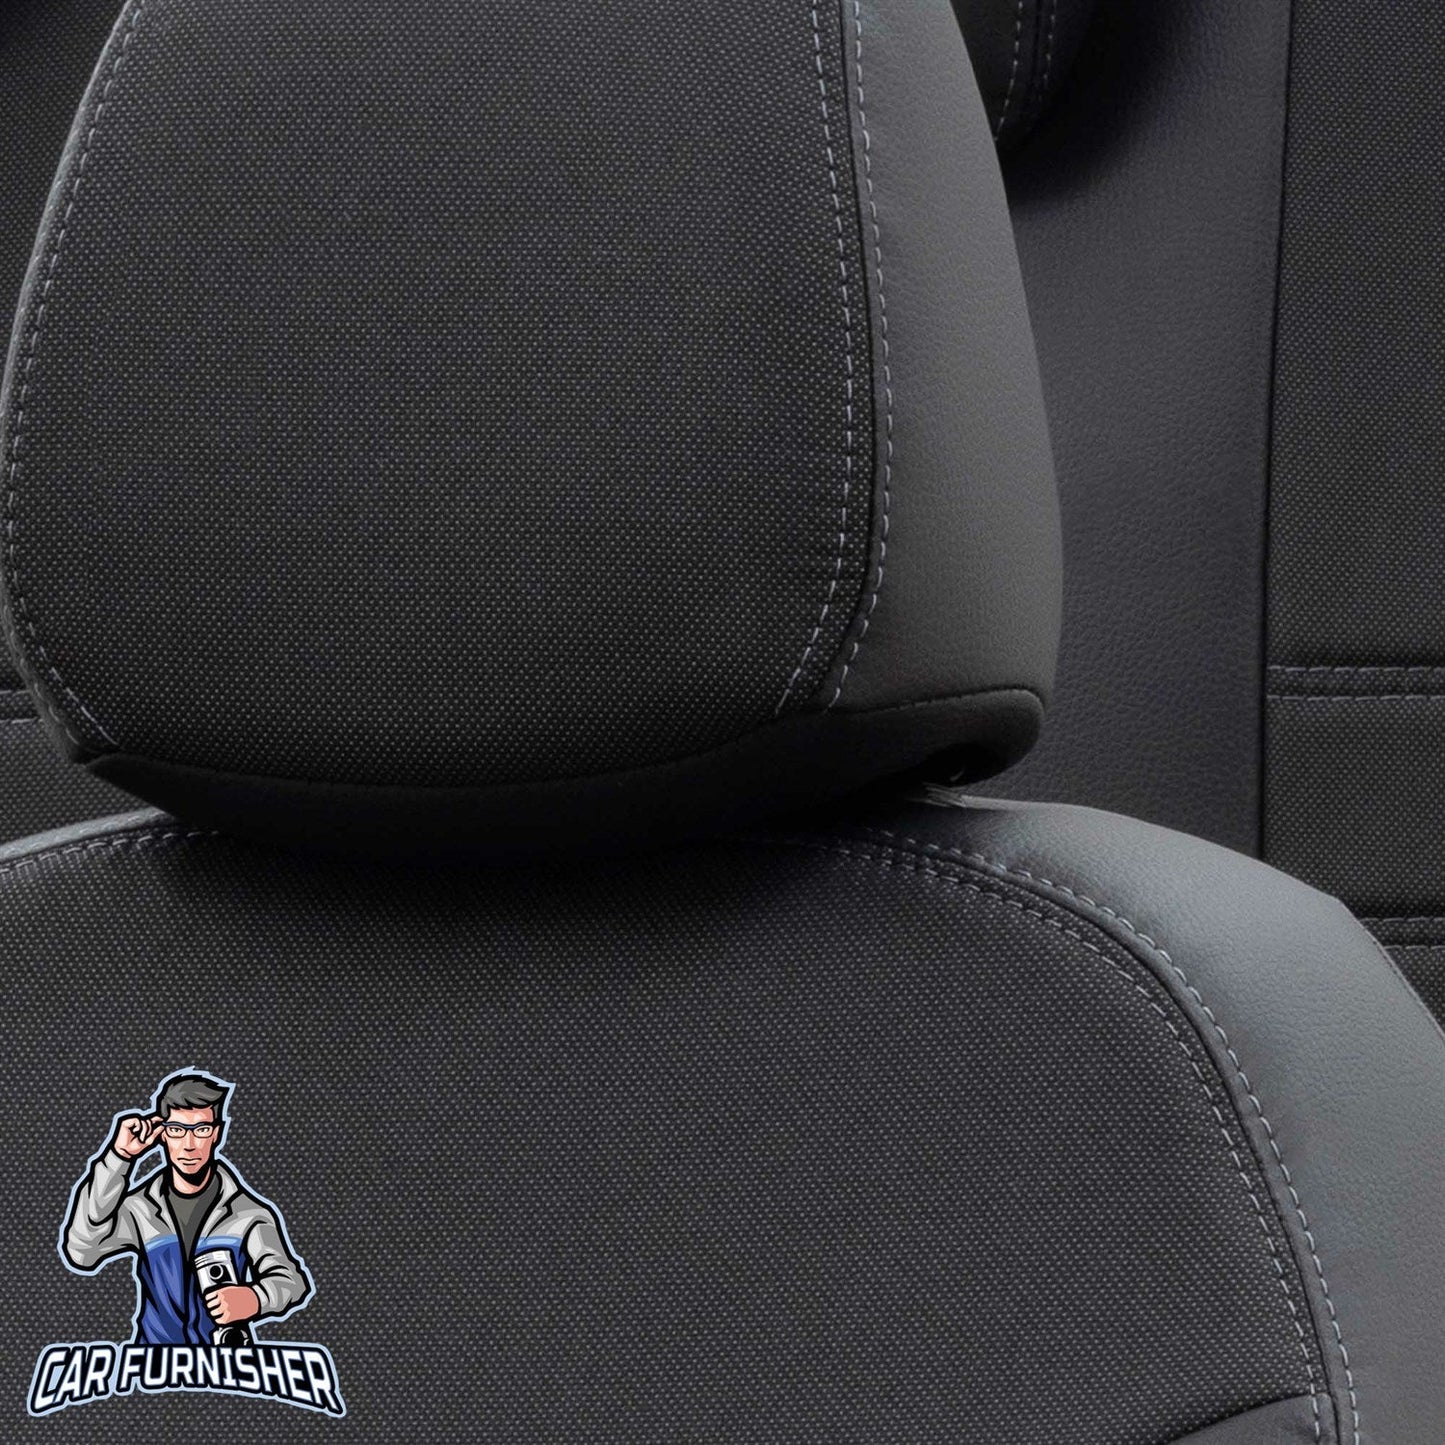 Kia Stonic Seat Covers Paris Leather & Jacquard Design Black Leather & Jacquard Fabric